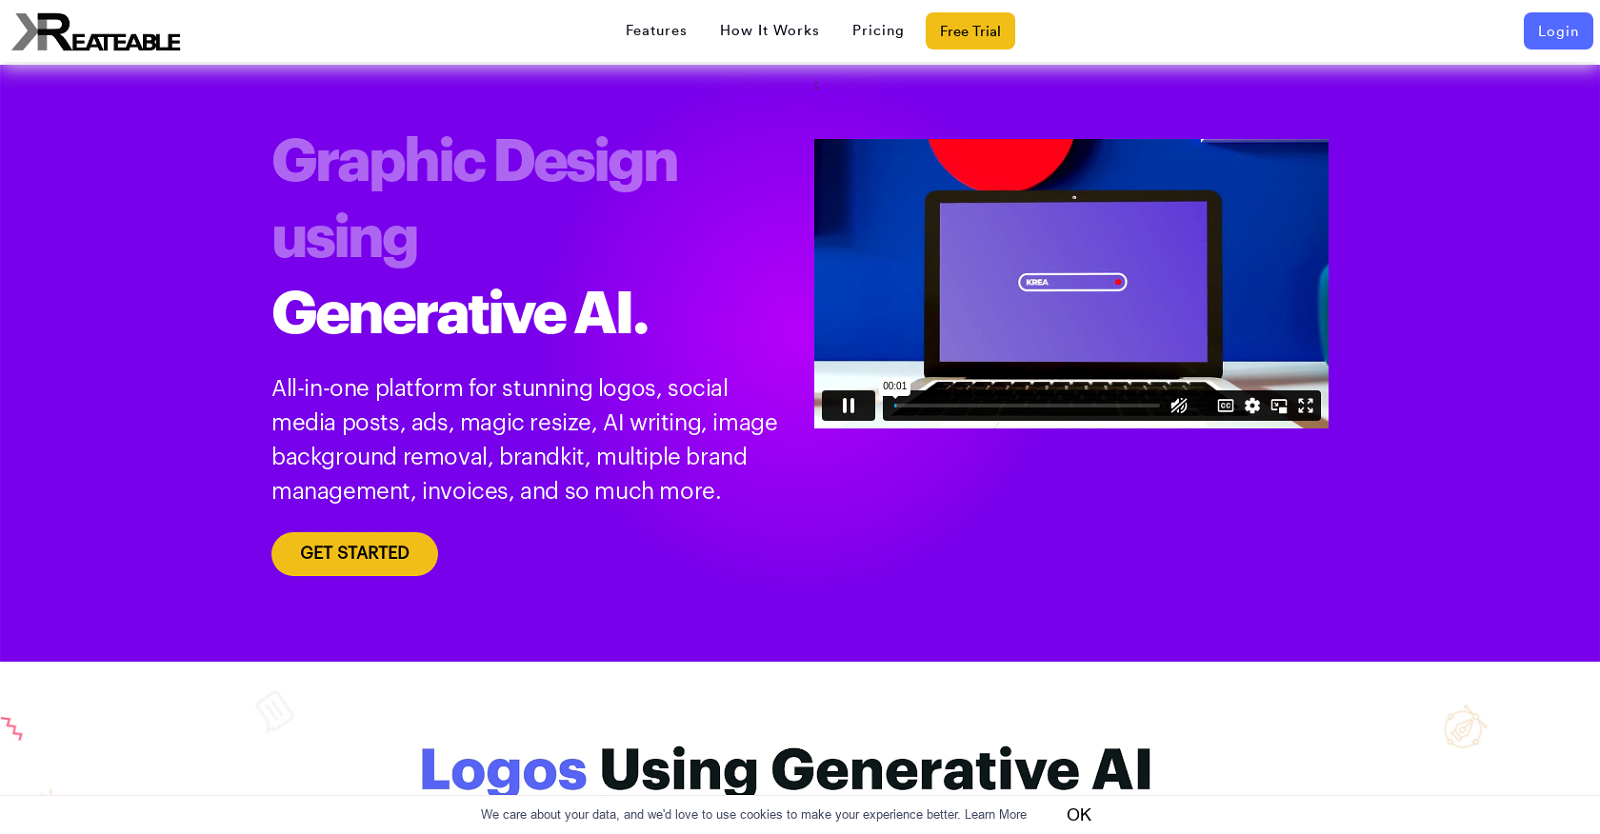 Kreateable website